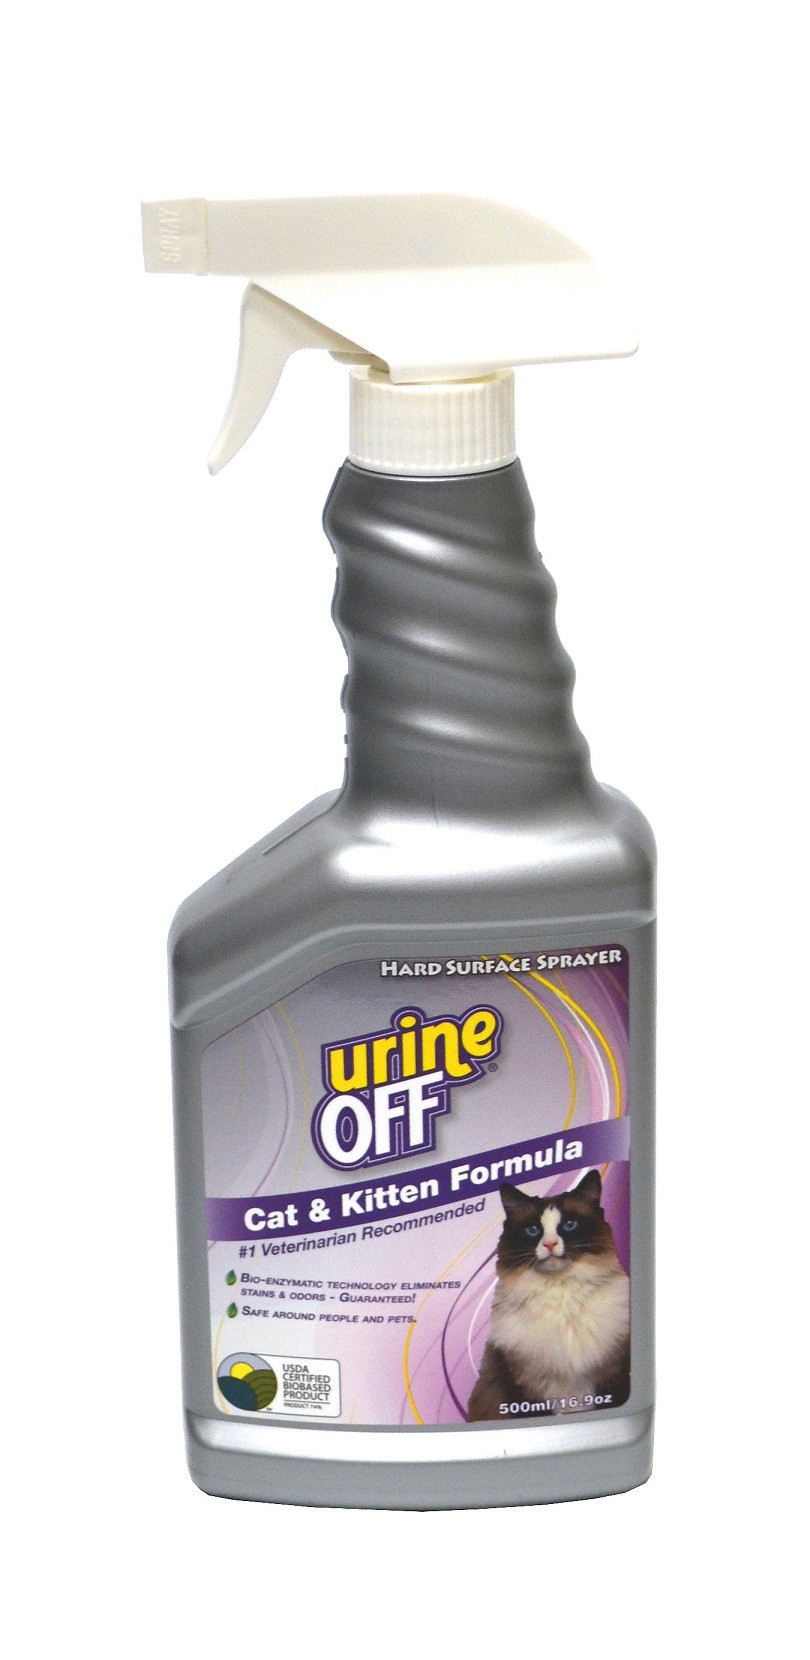 Urine Off Kat & Kitten